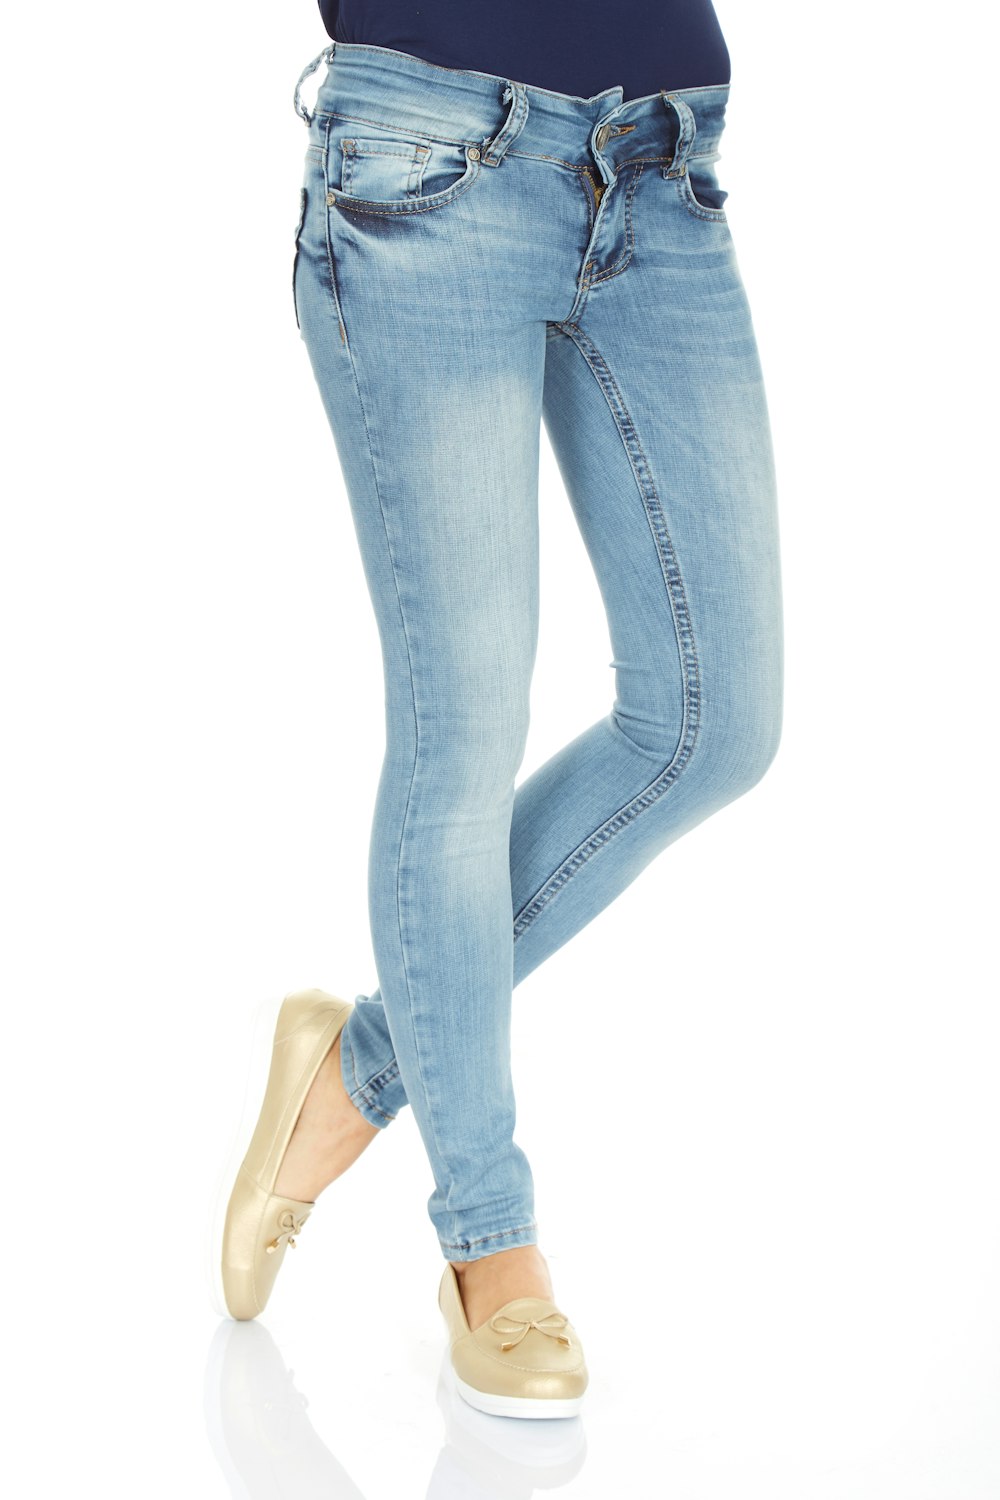 mujer con jeans azules y zapatillas blancas